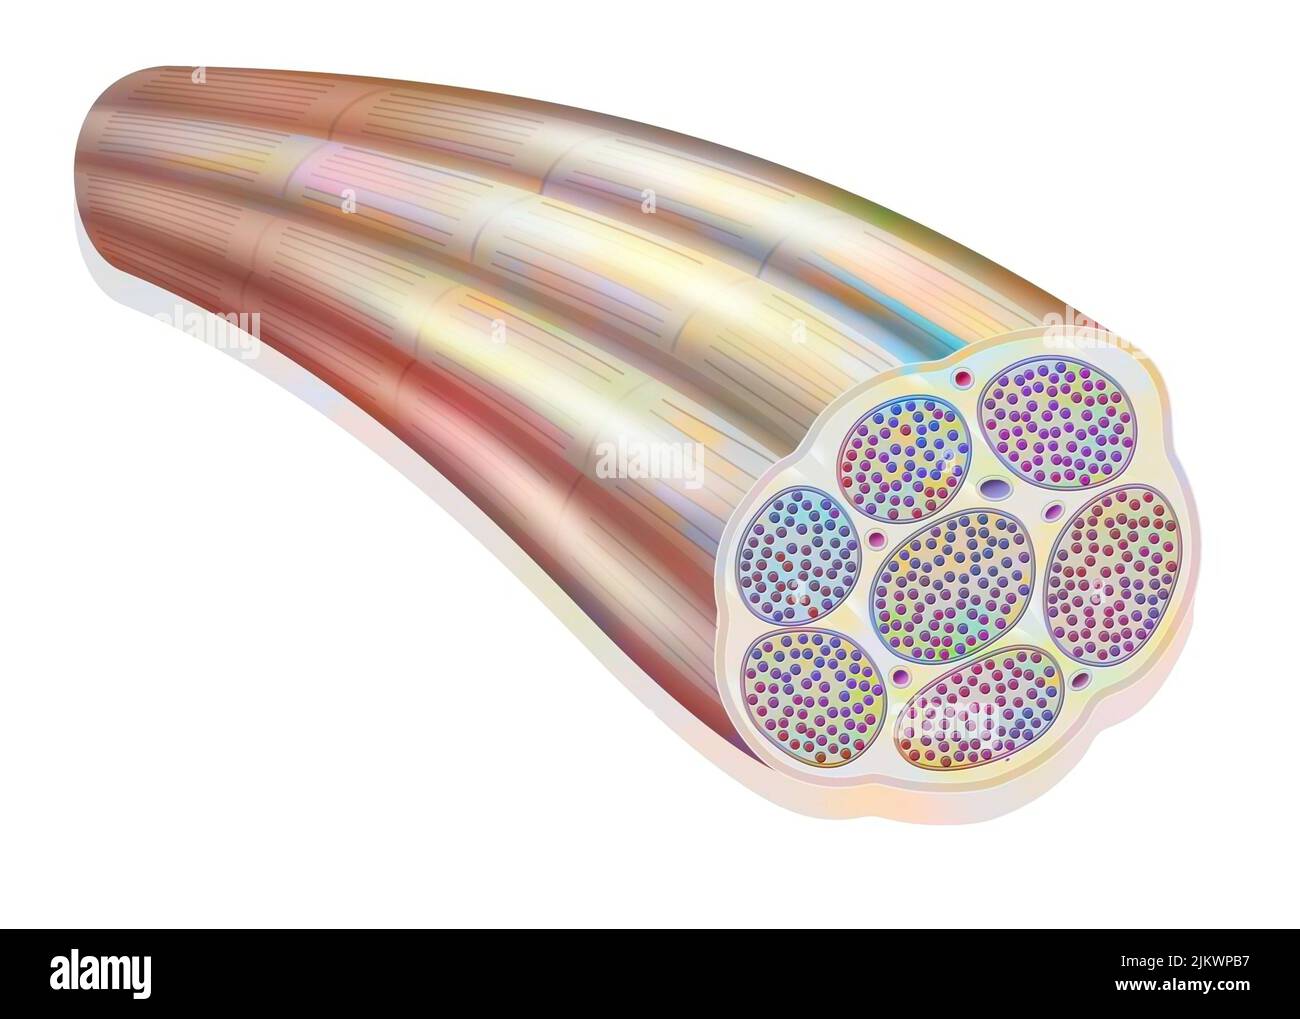 Muskelfasern, die die Myofibrillen aus Myofilamenten (Aktin und Myosin) zeigen. Stockfoto